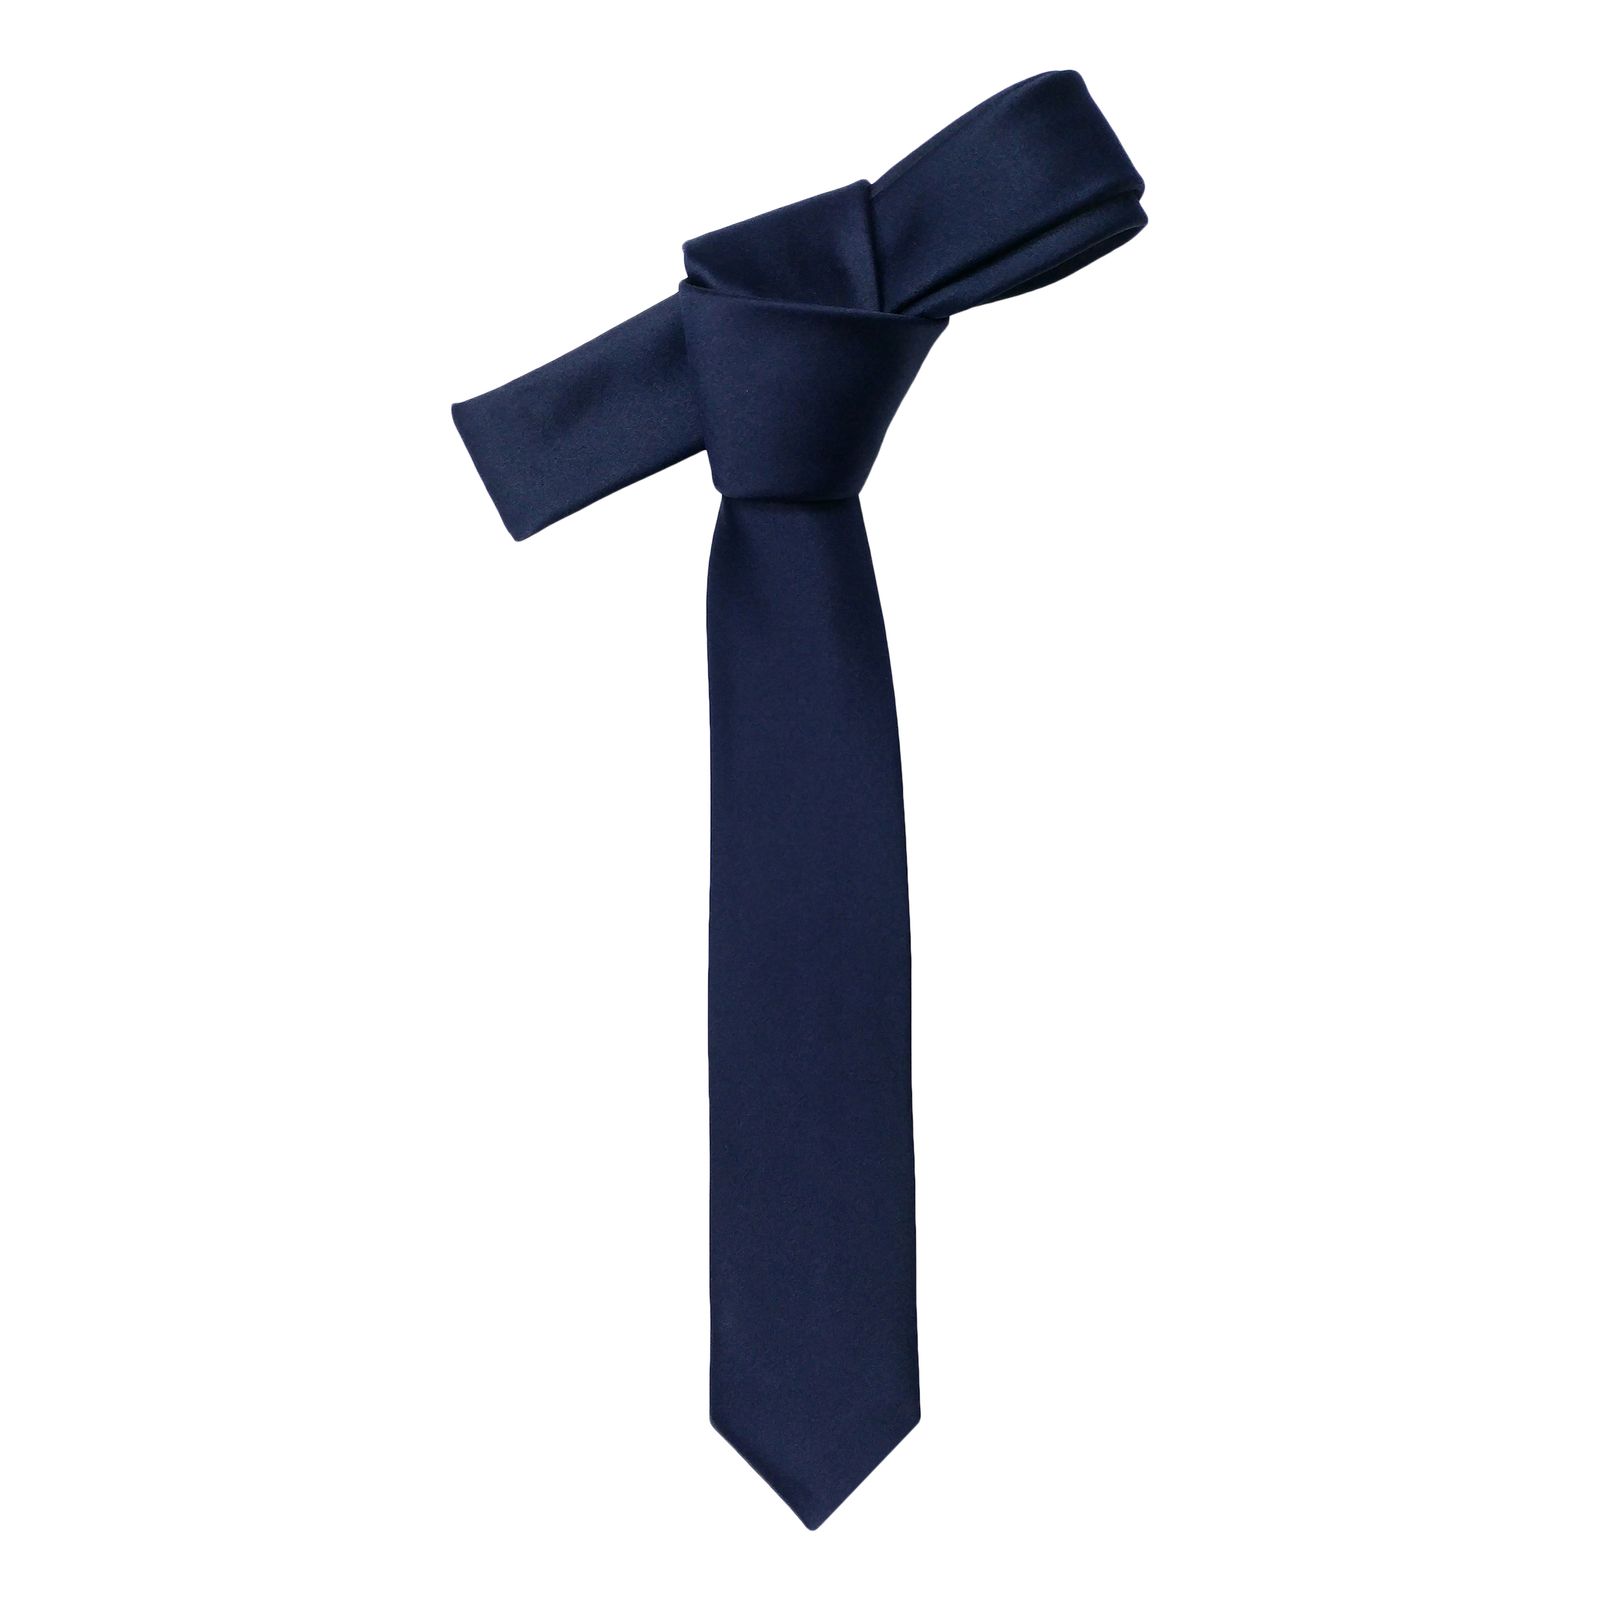  ست کراوات و پاپیون و دستمال جیب مردانه کد S -  - 6